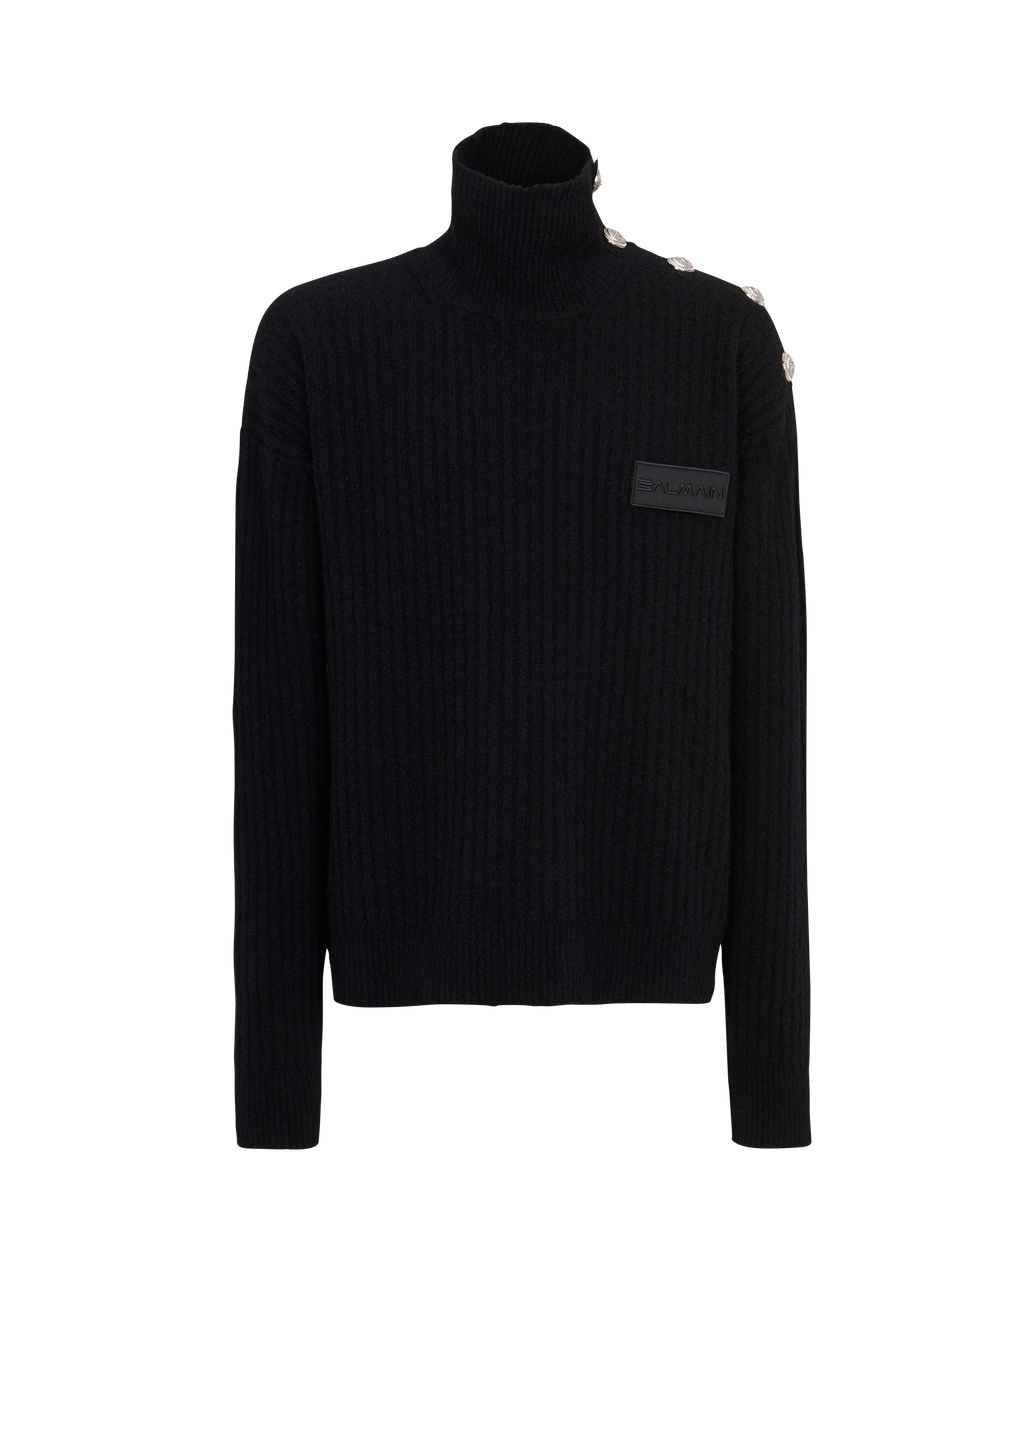 Cashmere turtleneck sweater, black, hi-res